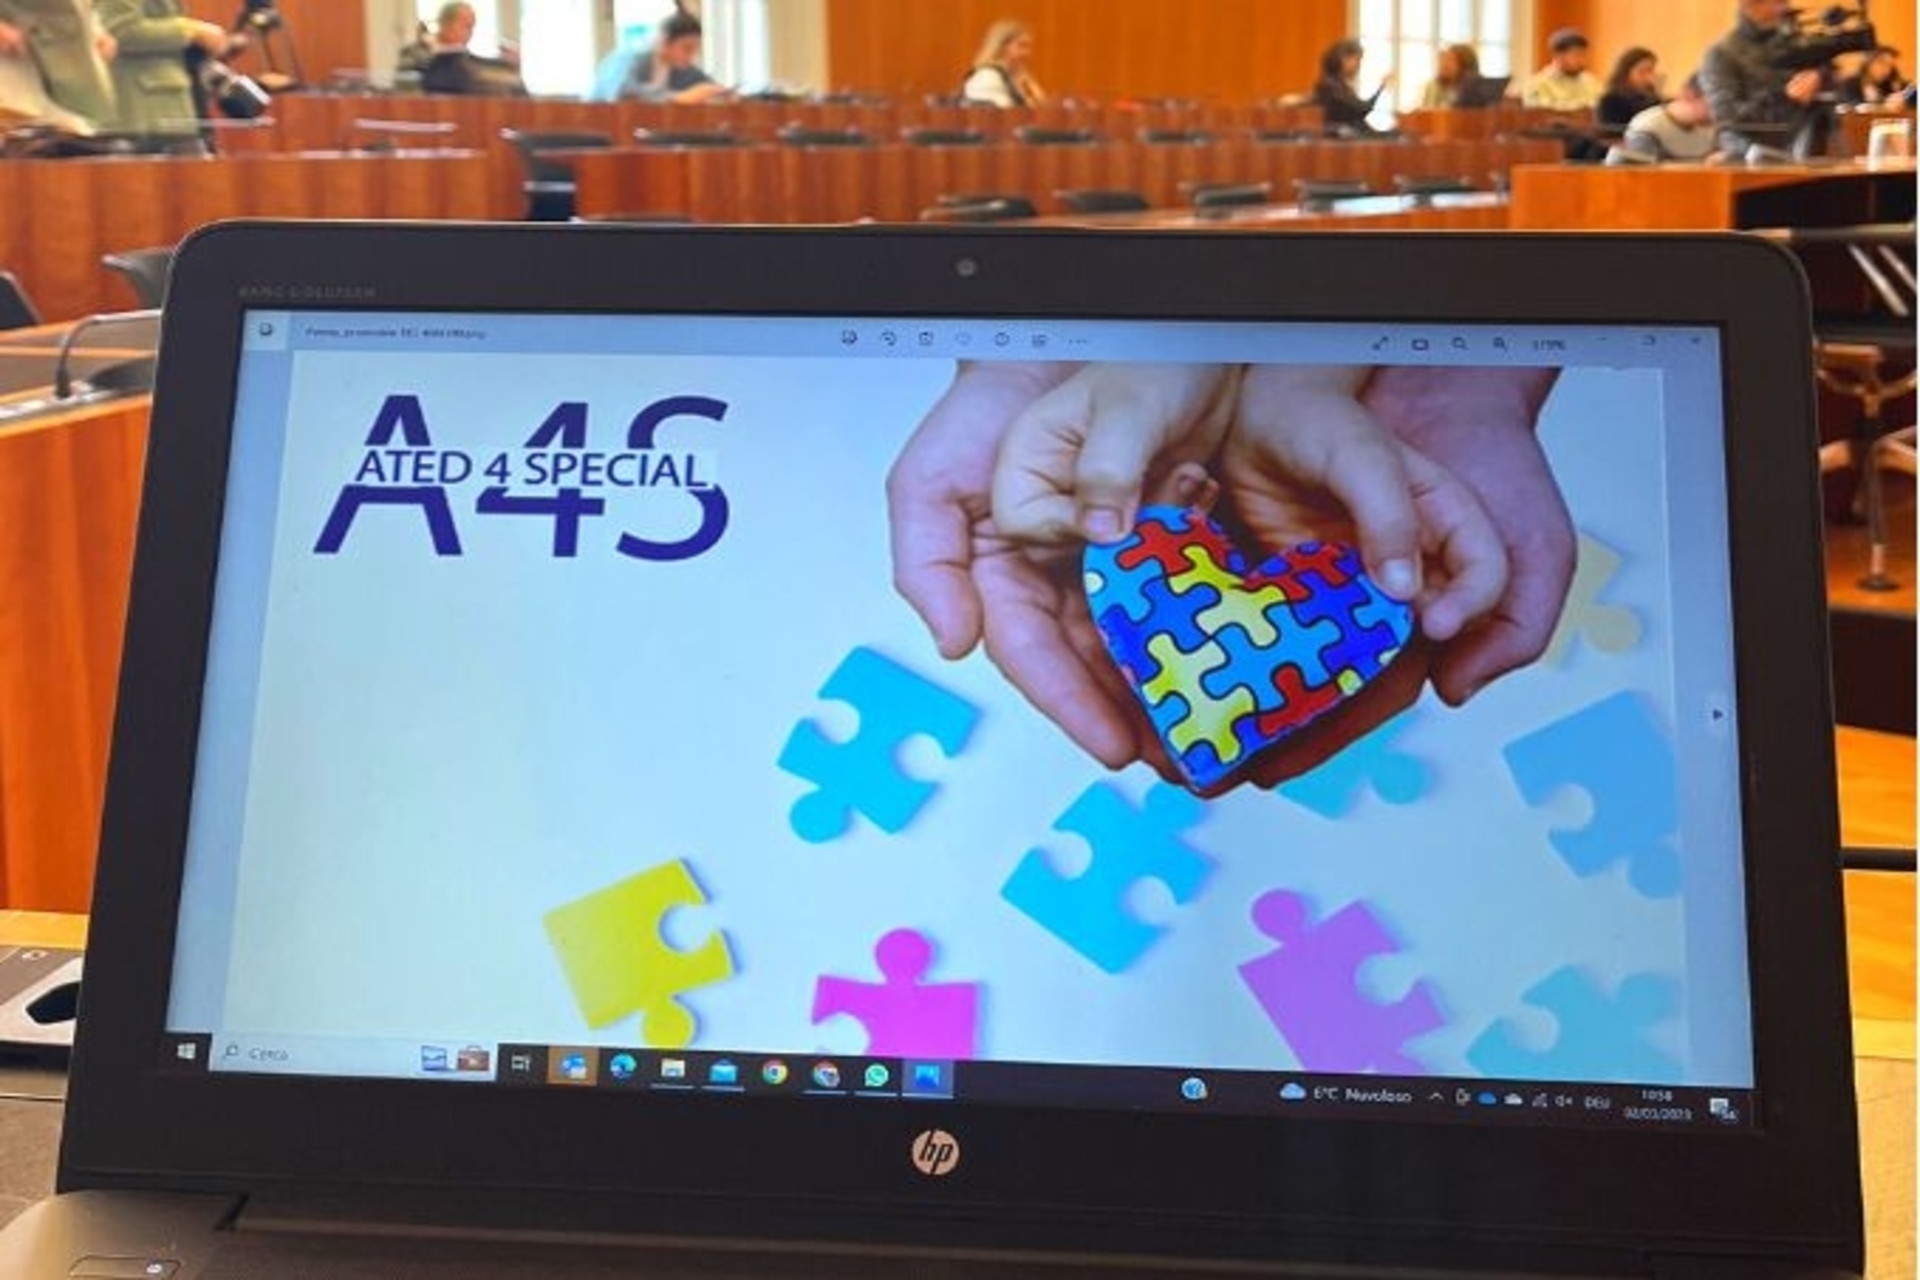 ated4special: il manifesto del progetto tecnologico e solidale di contrasto all’autismo lanciato dall’associazione ated-ICT Ticino, con il patrocinio della Città di Lugano